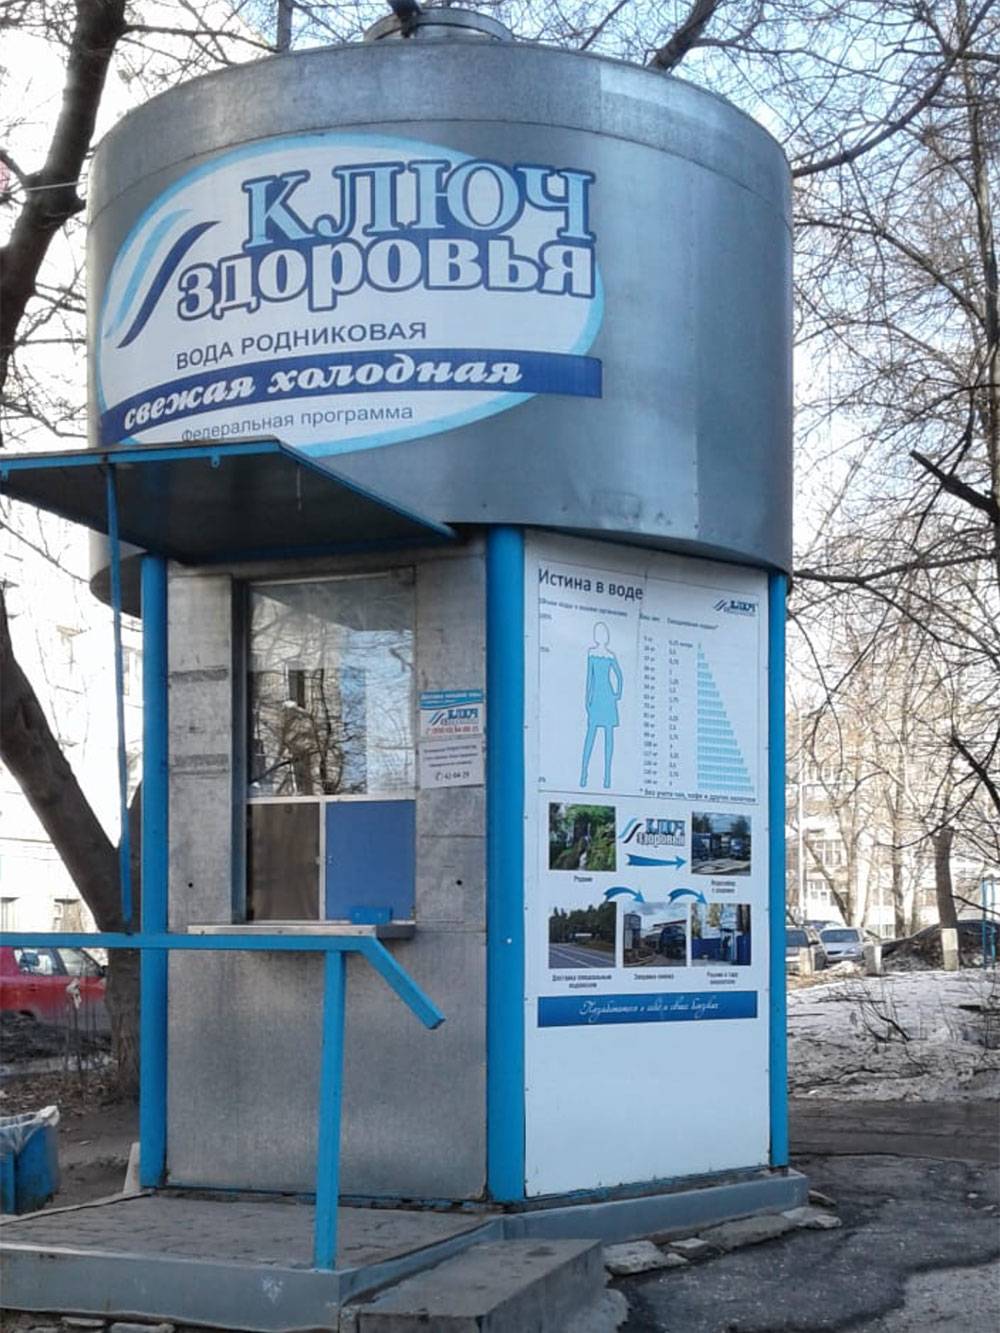 Специальный киоск с питьевой водой, 5 литров родниковой воды стоят 30 <span class=ruble>Р</span>